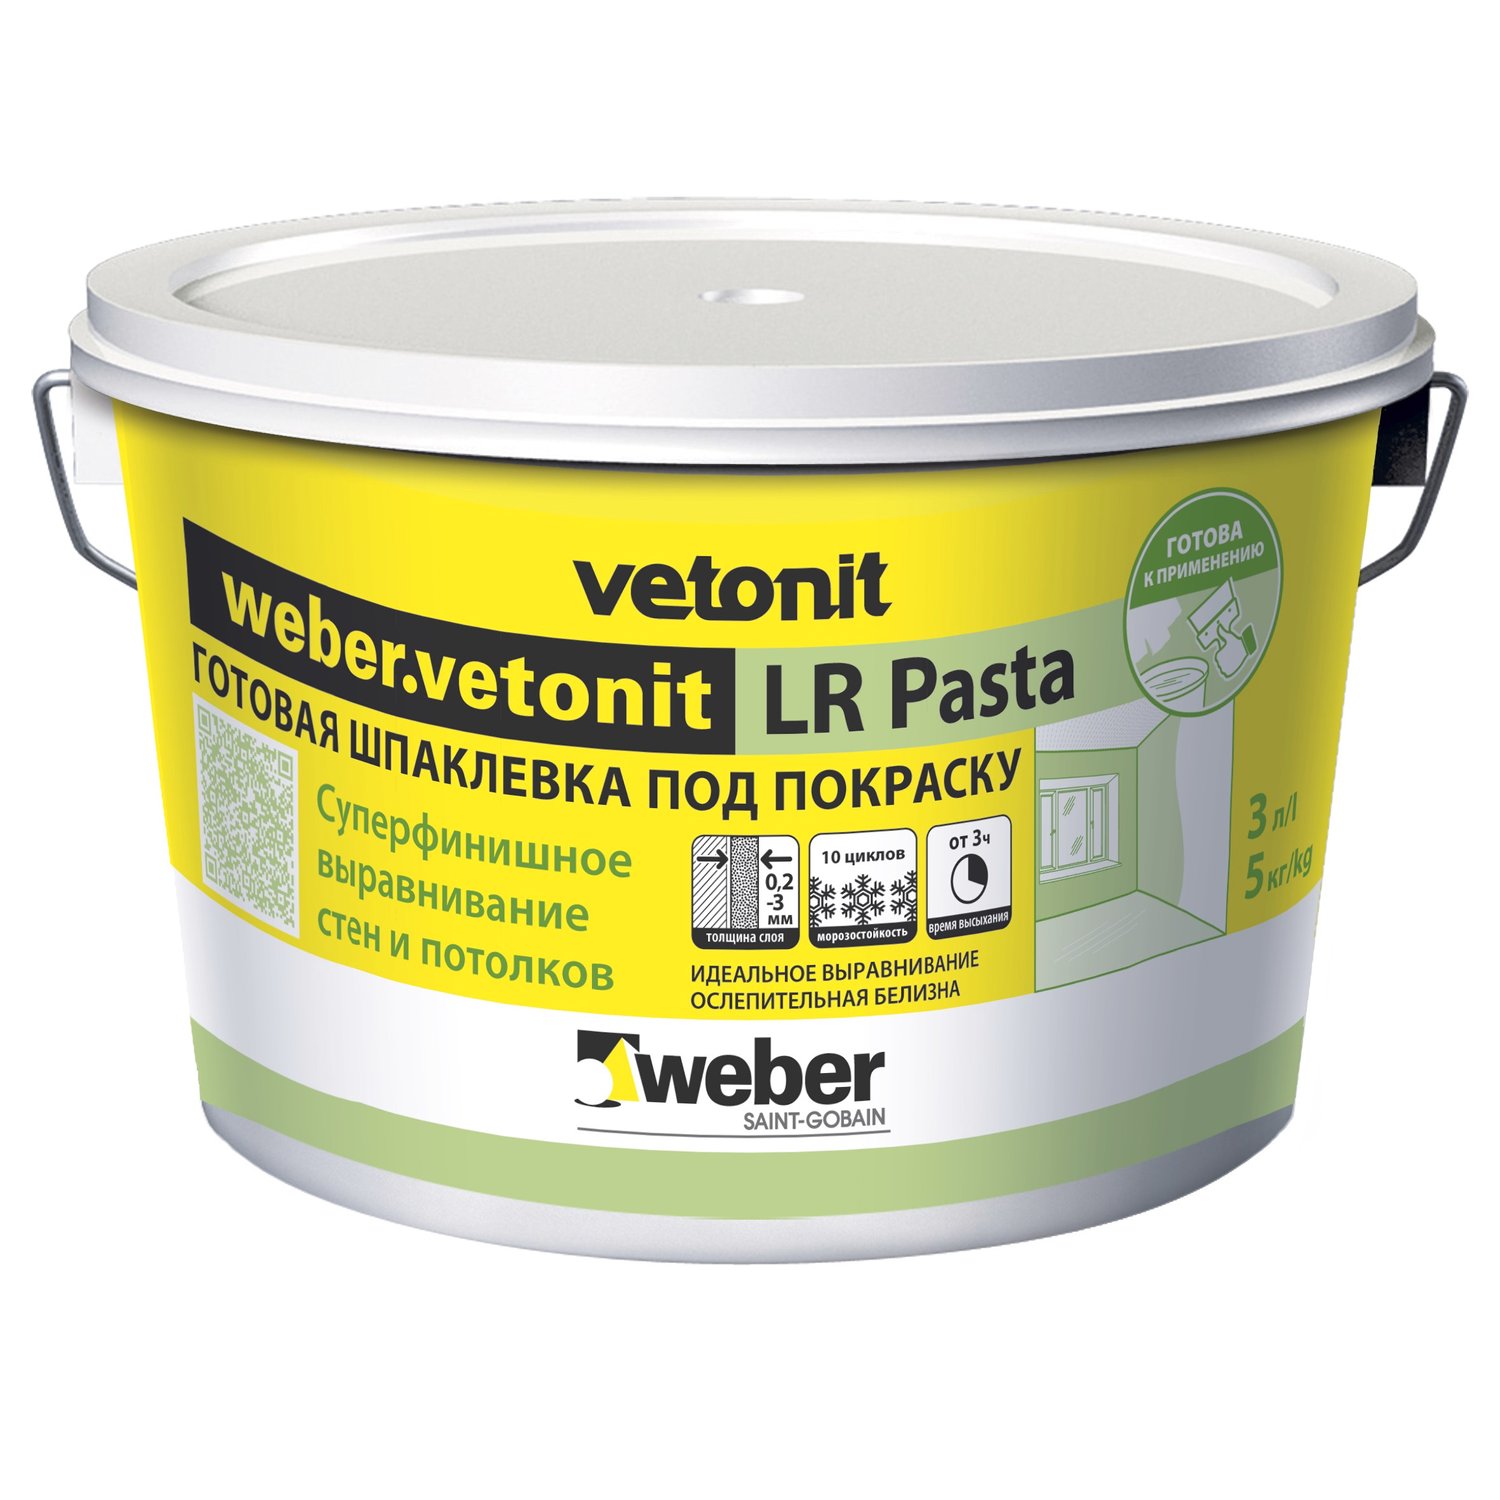 Вебер ветонит ЛР Паста шпаклевка готовая суперфинишная белая 20кг (Weber.vetonit LR pasta)